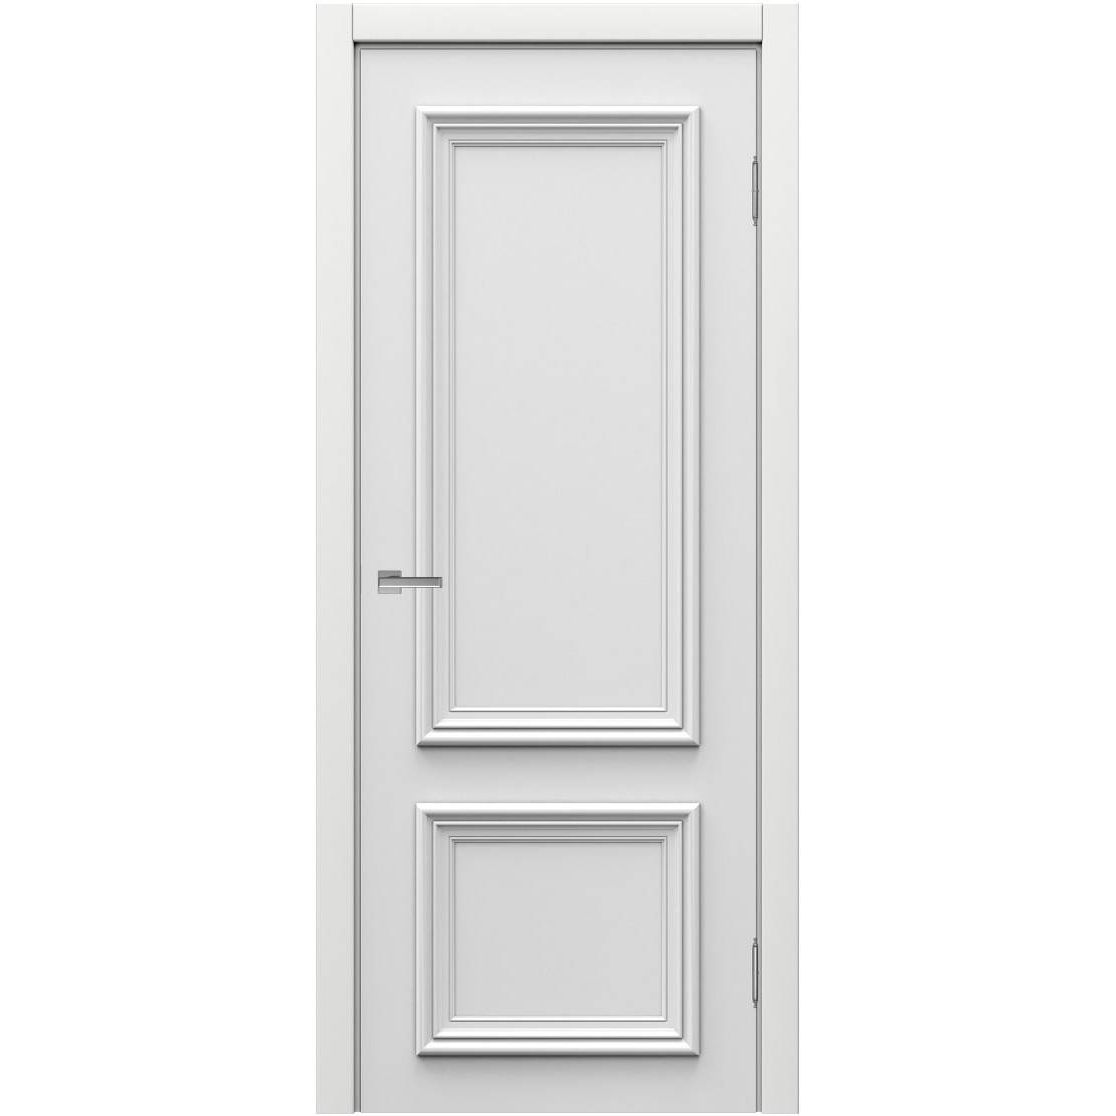 Белая дверь купить спб. Ульяновская дверь belini-222 белая эмаль ДГ. Межкомнатная дверь Сиена ДГ, массив сосны, эмаль белый жемчуг. Дверь белая глухая " канадка " ДГ-80. Модель двери u51.